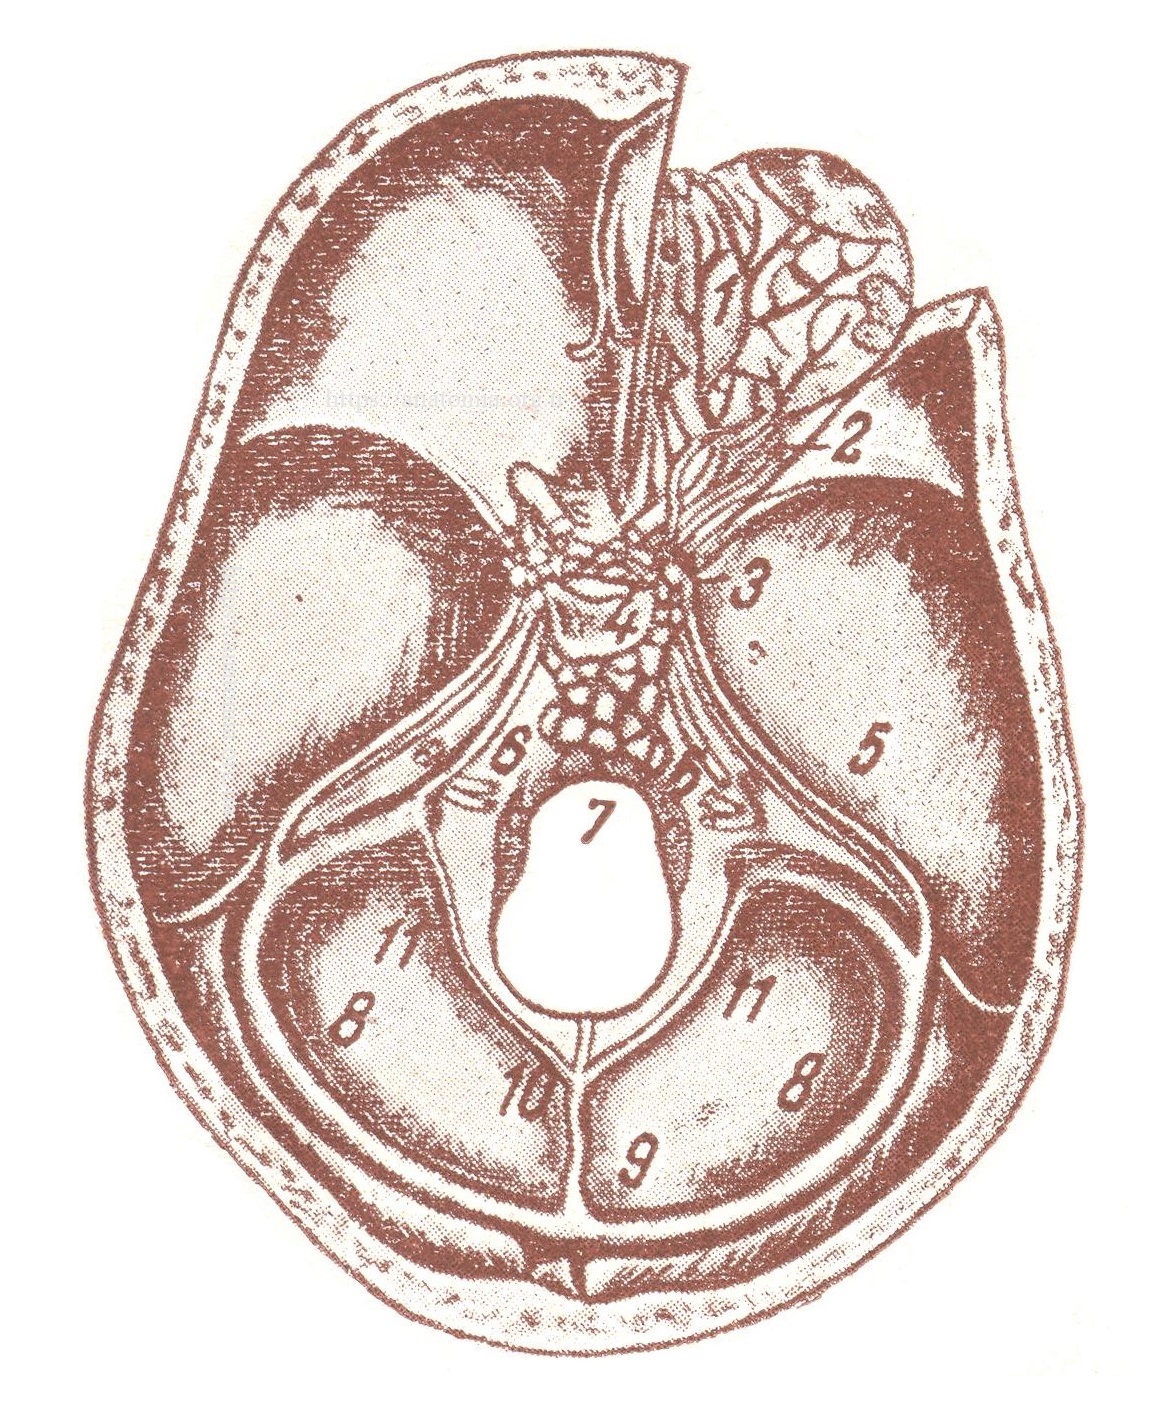 Пазухи свода черепа и его основания (внутренняя поверхность черепа) - Sinus baseos cranii internae. Схематический рисунок